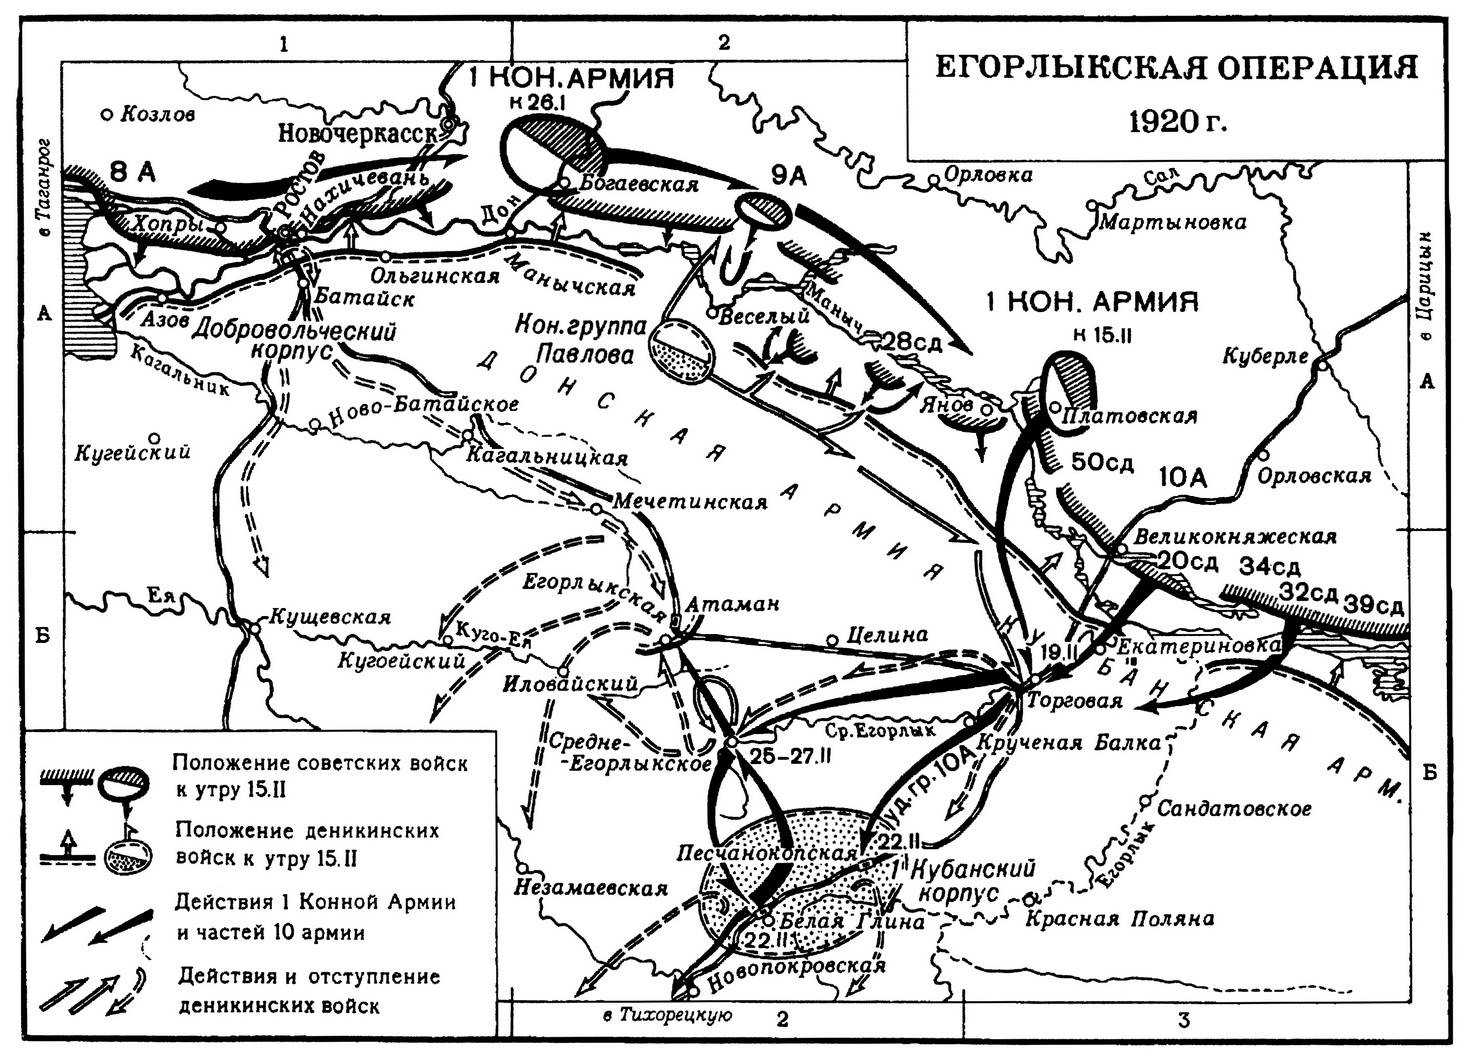 Северо кавказская операция. Доно-Манычская операция (1920). Егорлыкское сражение 1920 на карте. Егорлыкская битва гражданской войны.